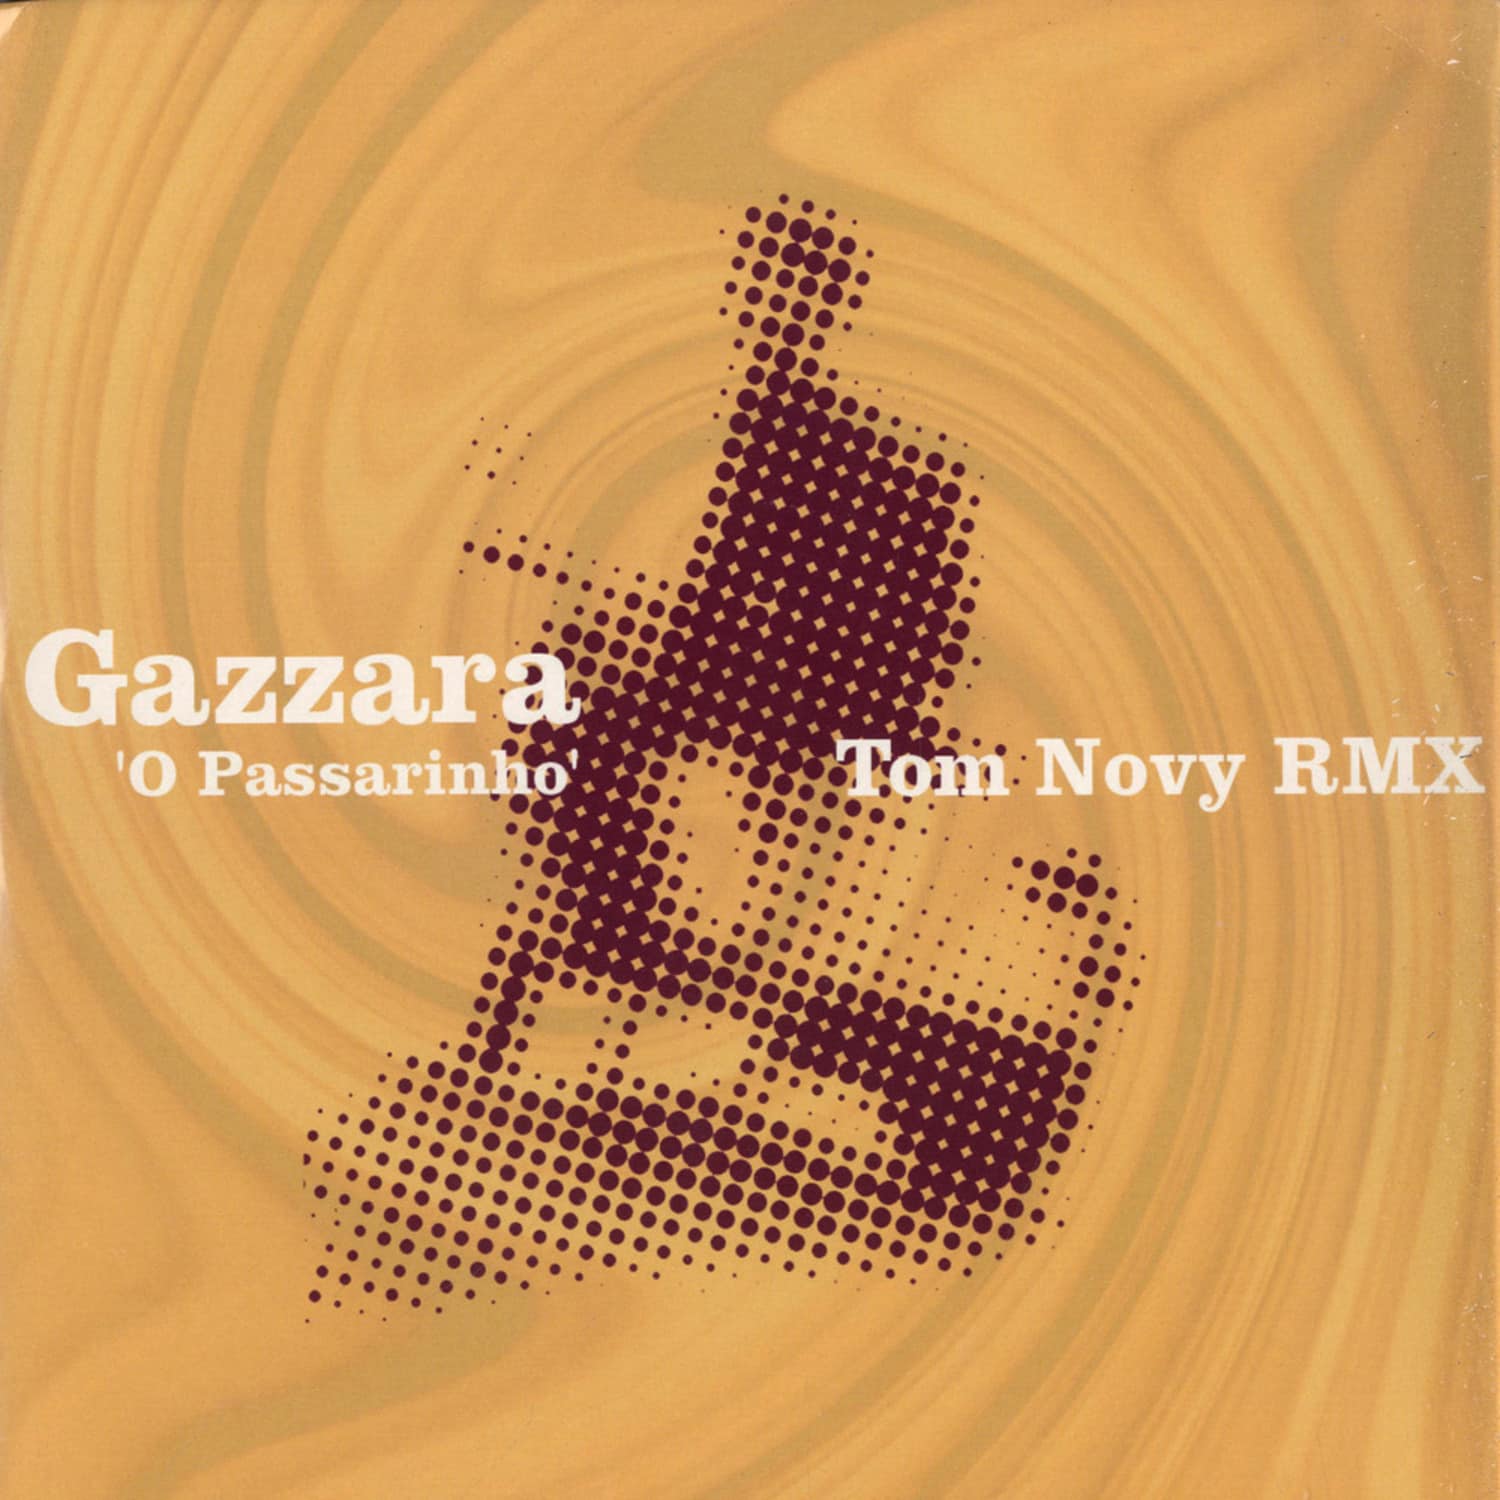 Gazzarra - O PASSARINHO - TOM NOVY REMIX